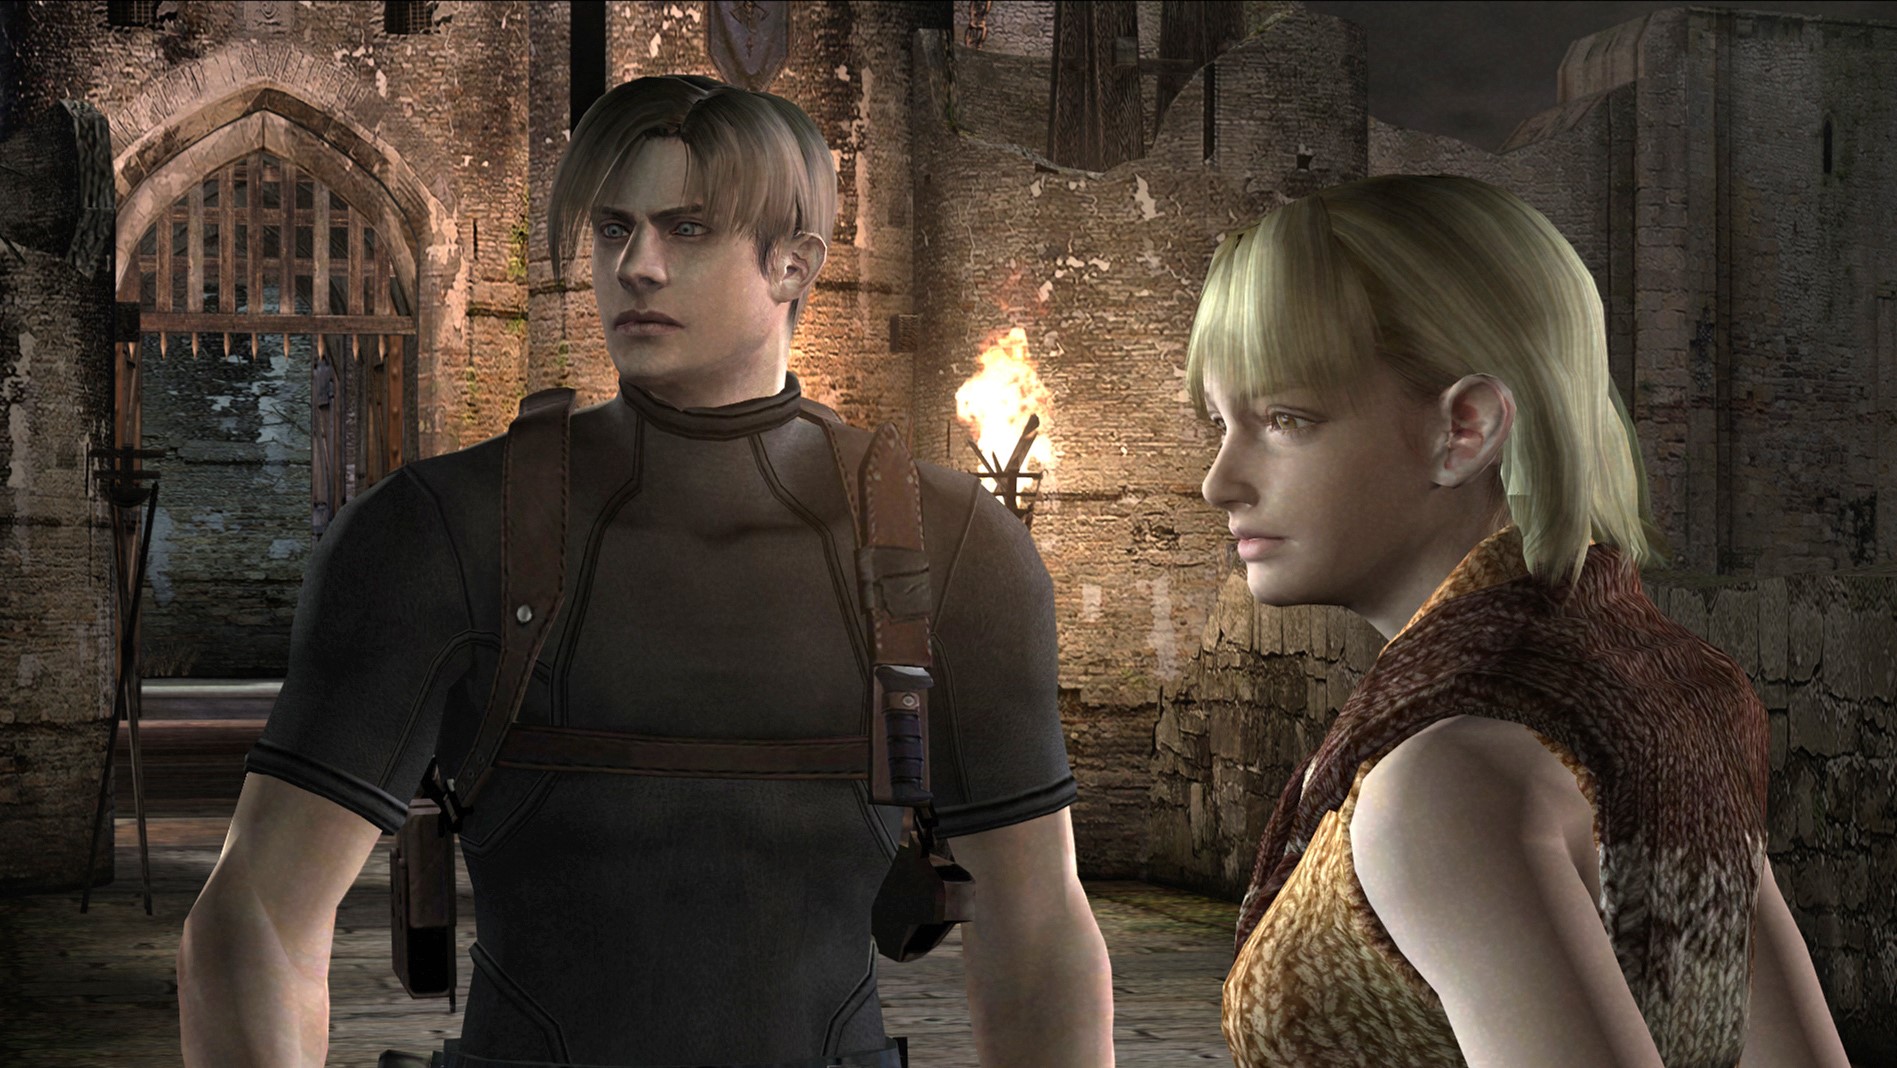 Jogo Resident Evil 3 Xbox One Capcom com o Melhor Preço é no Zoom